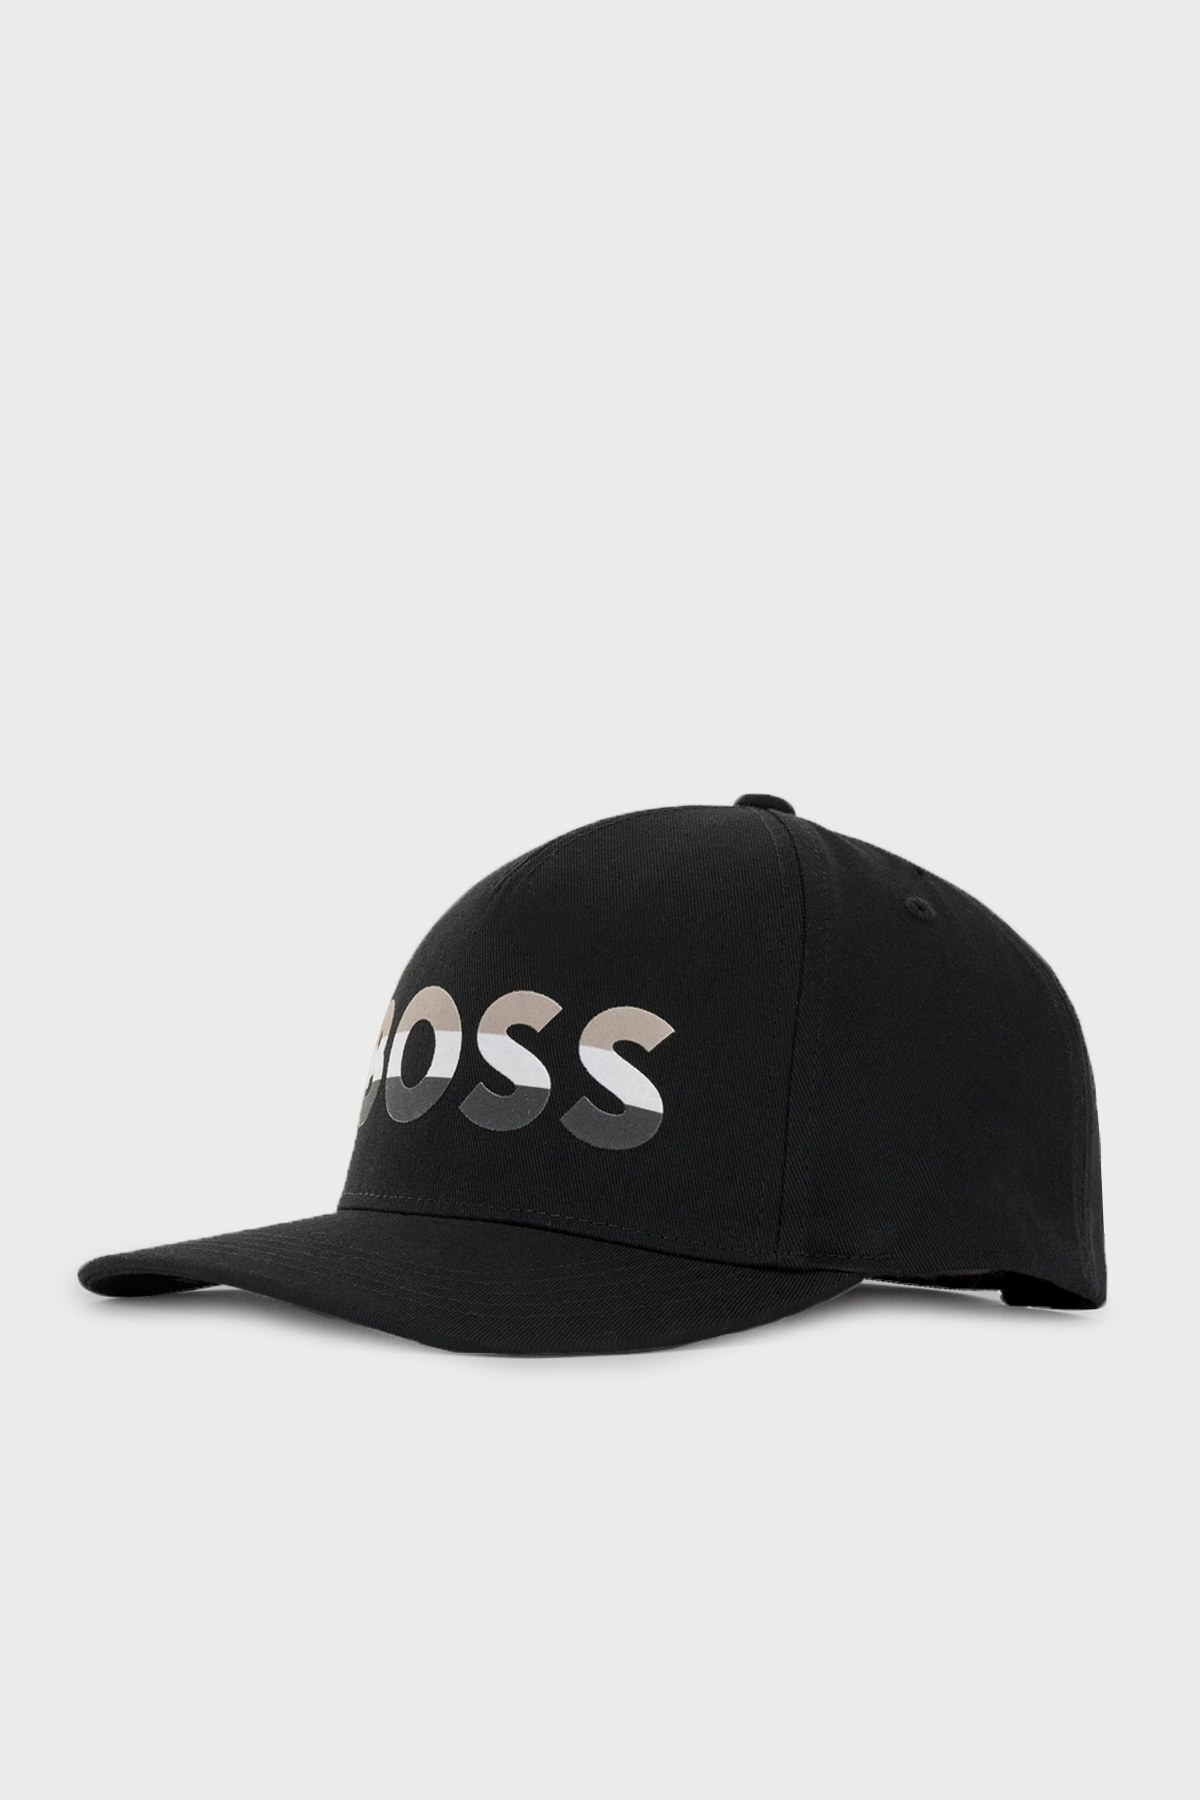 Boss Logo Baskılı % 100 Pamuk Erkek Şapka 50466236 001 SİYAH